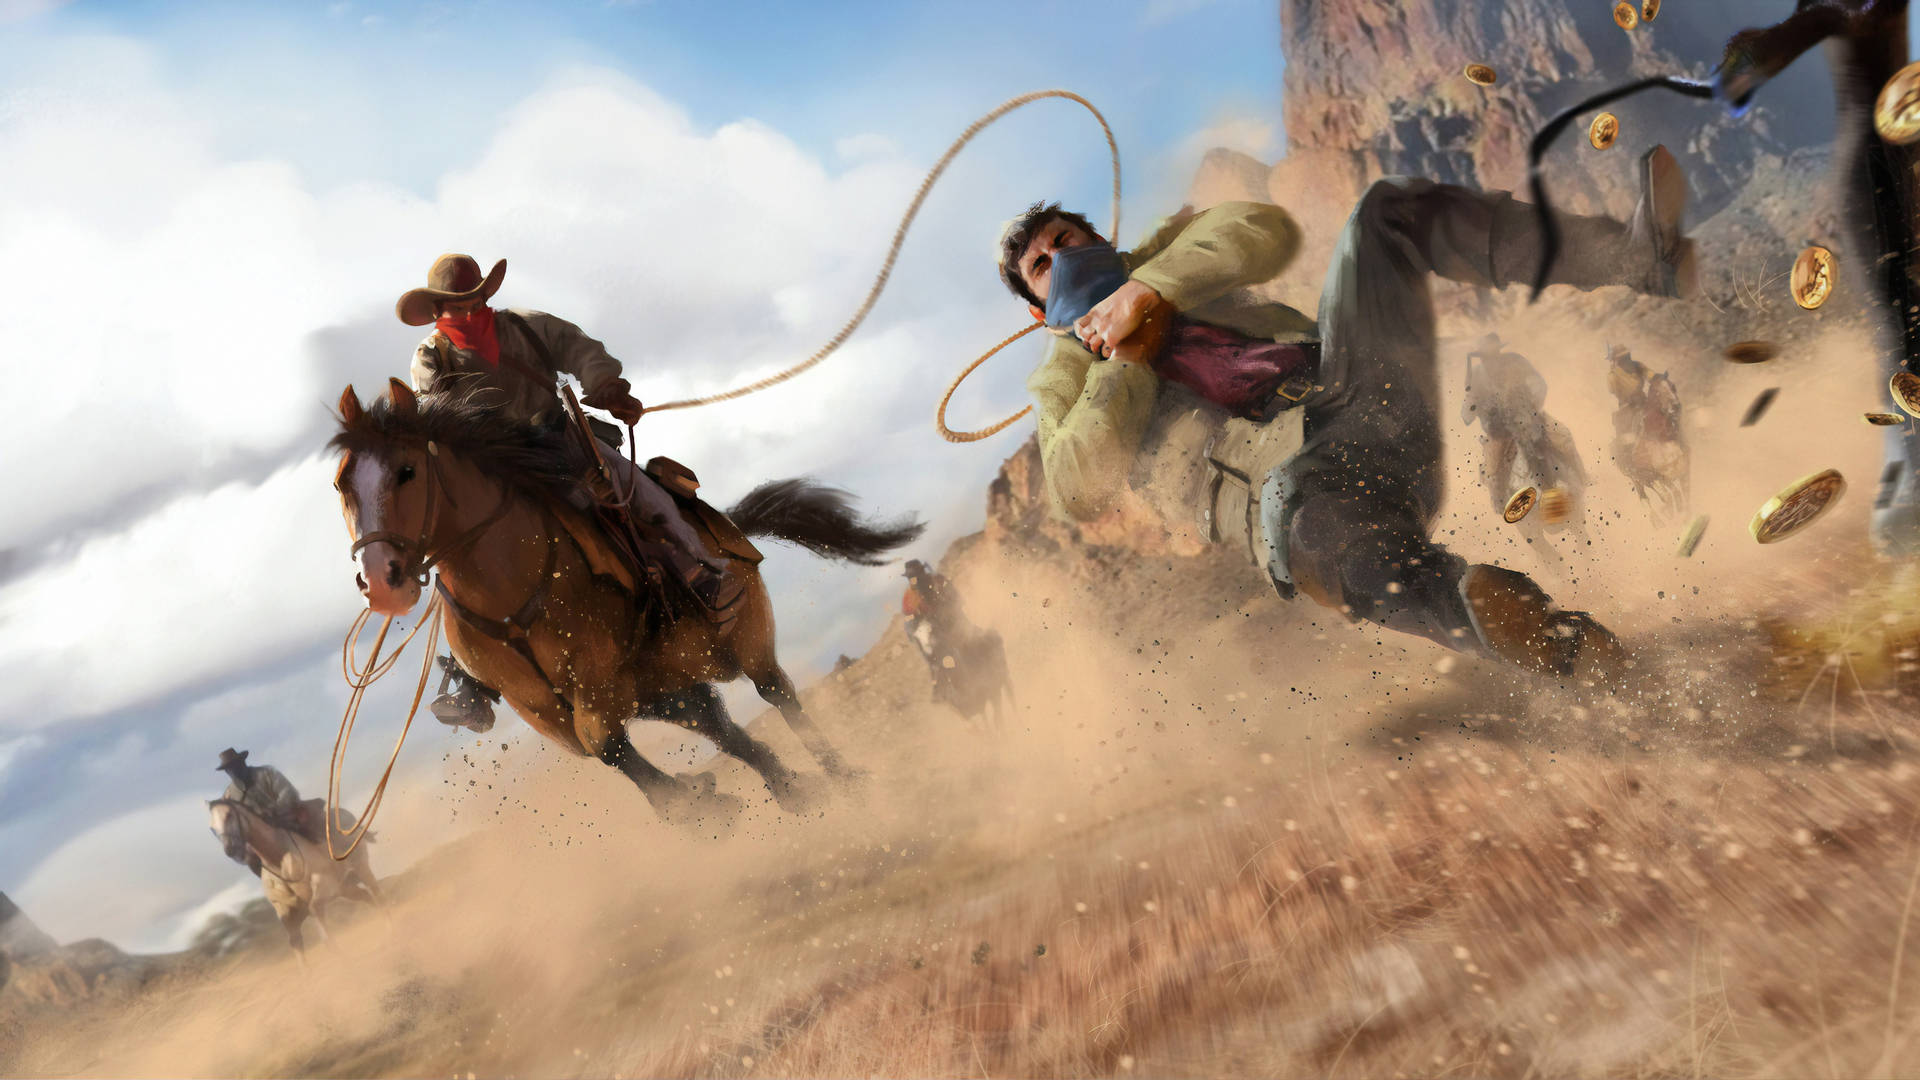 Udtaeg så farlige missioner i det vilde vesten i Red Dead Redemption 2. Wallpaper